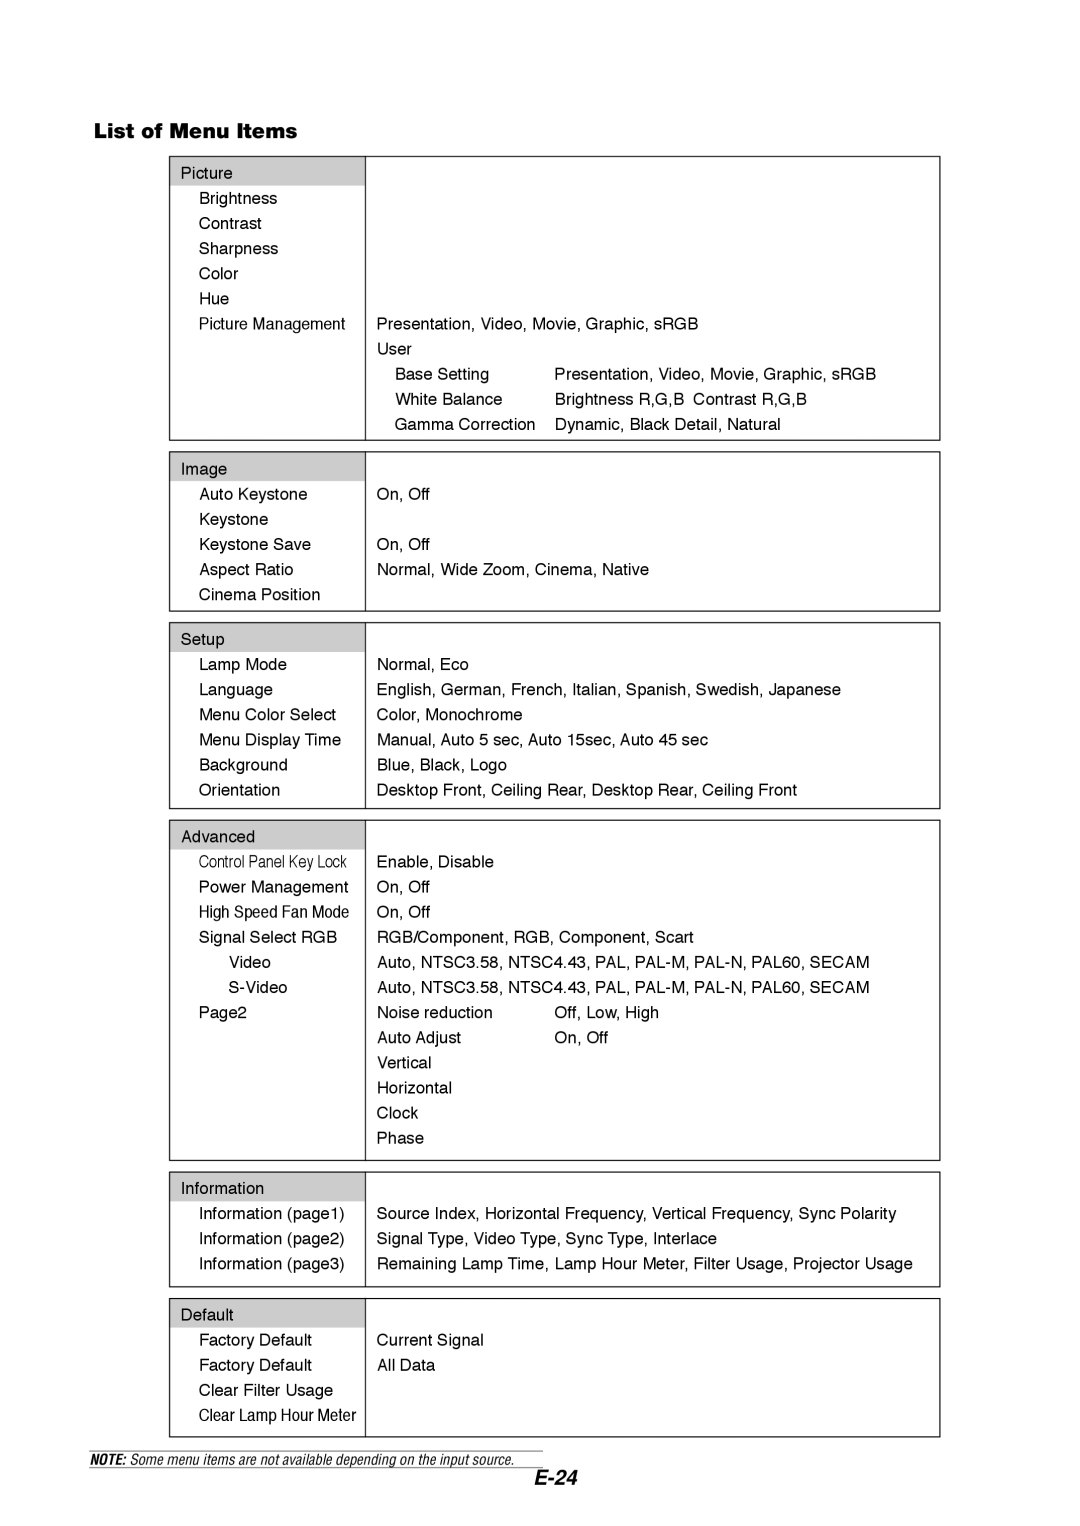 Dukane 8766 manual List of Menu Items, E-24 